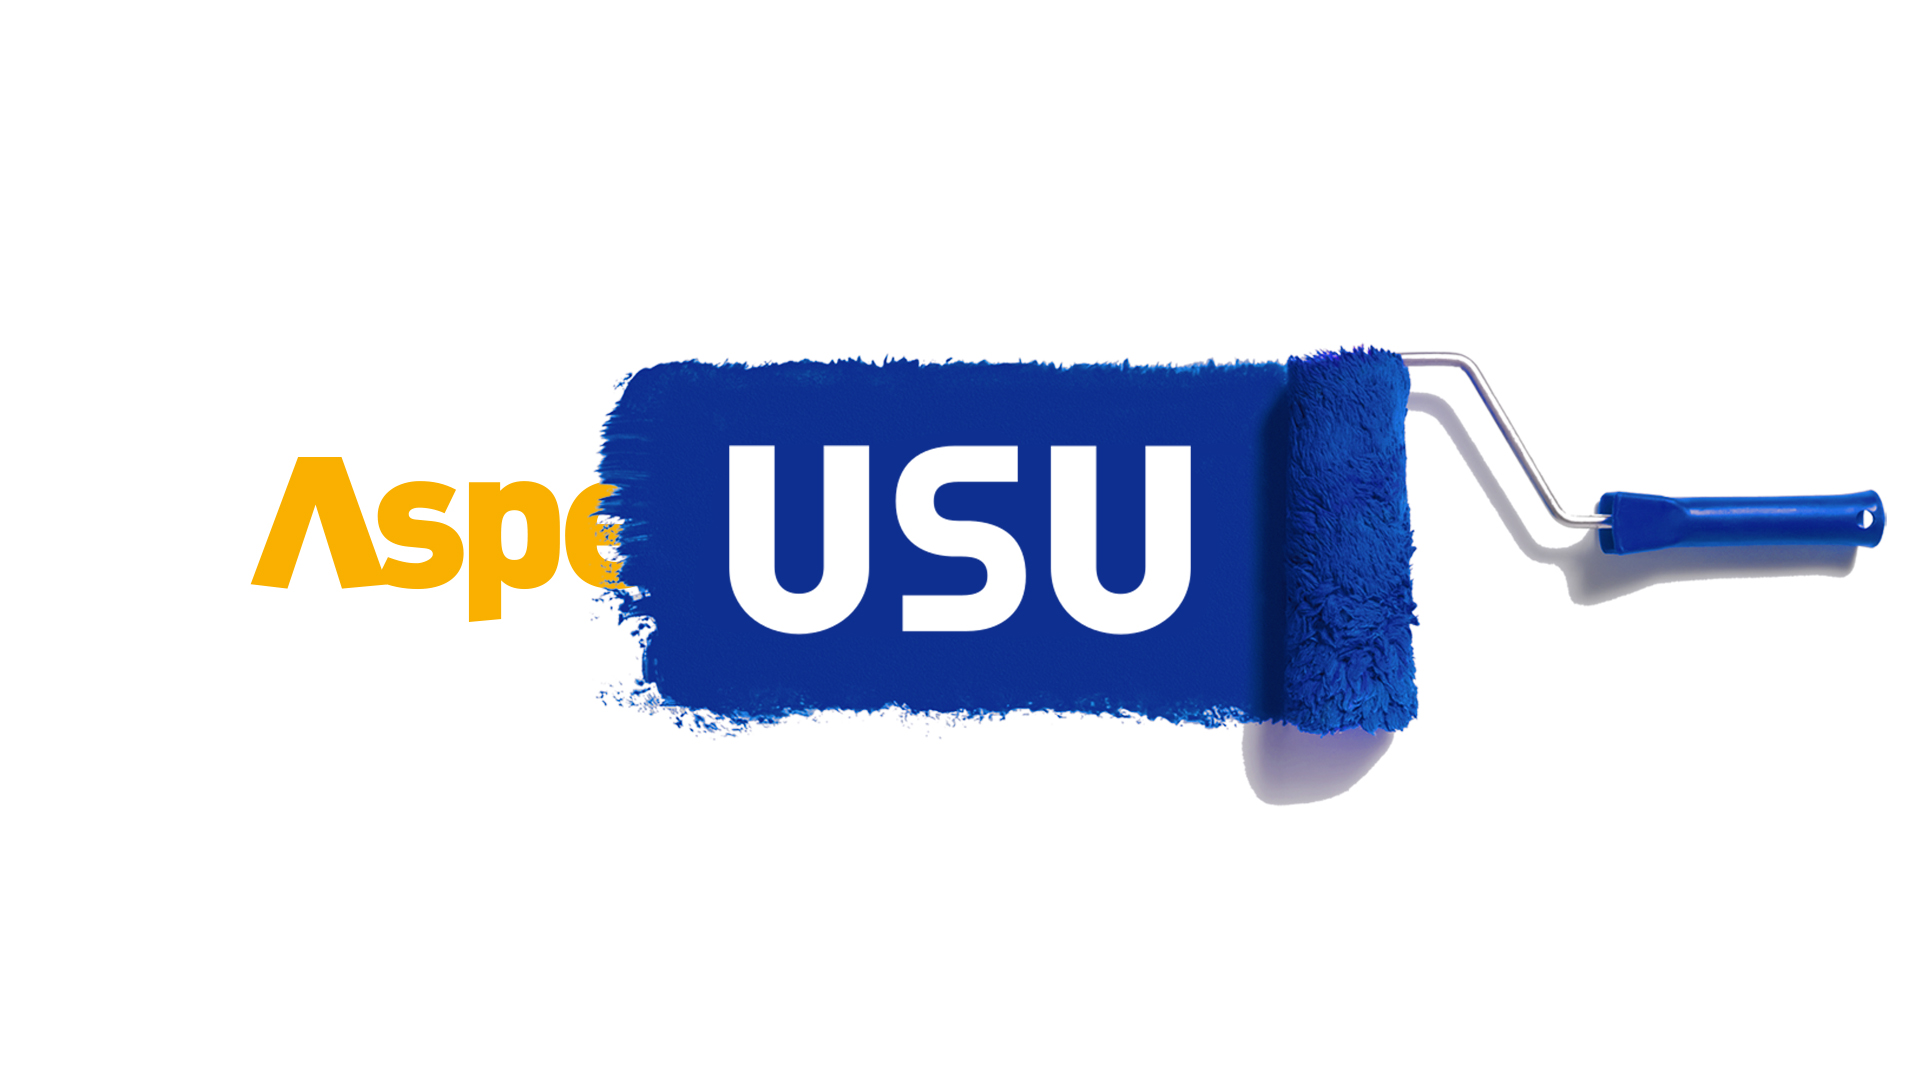 Asper is now USU